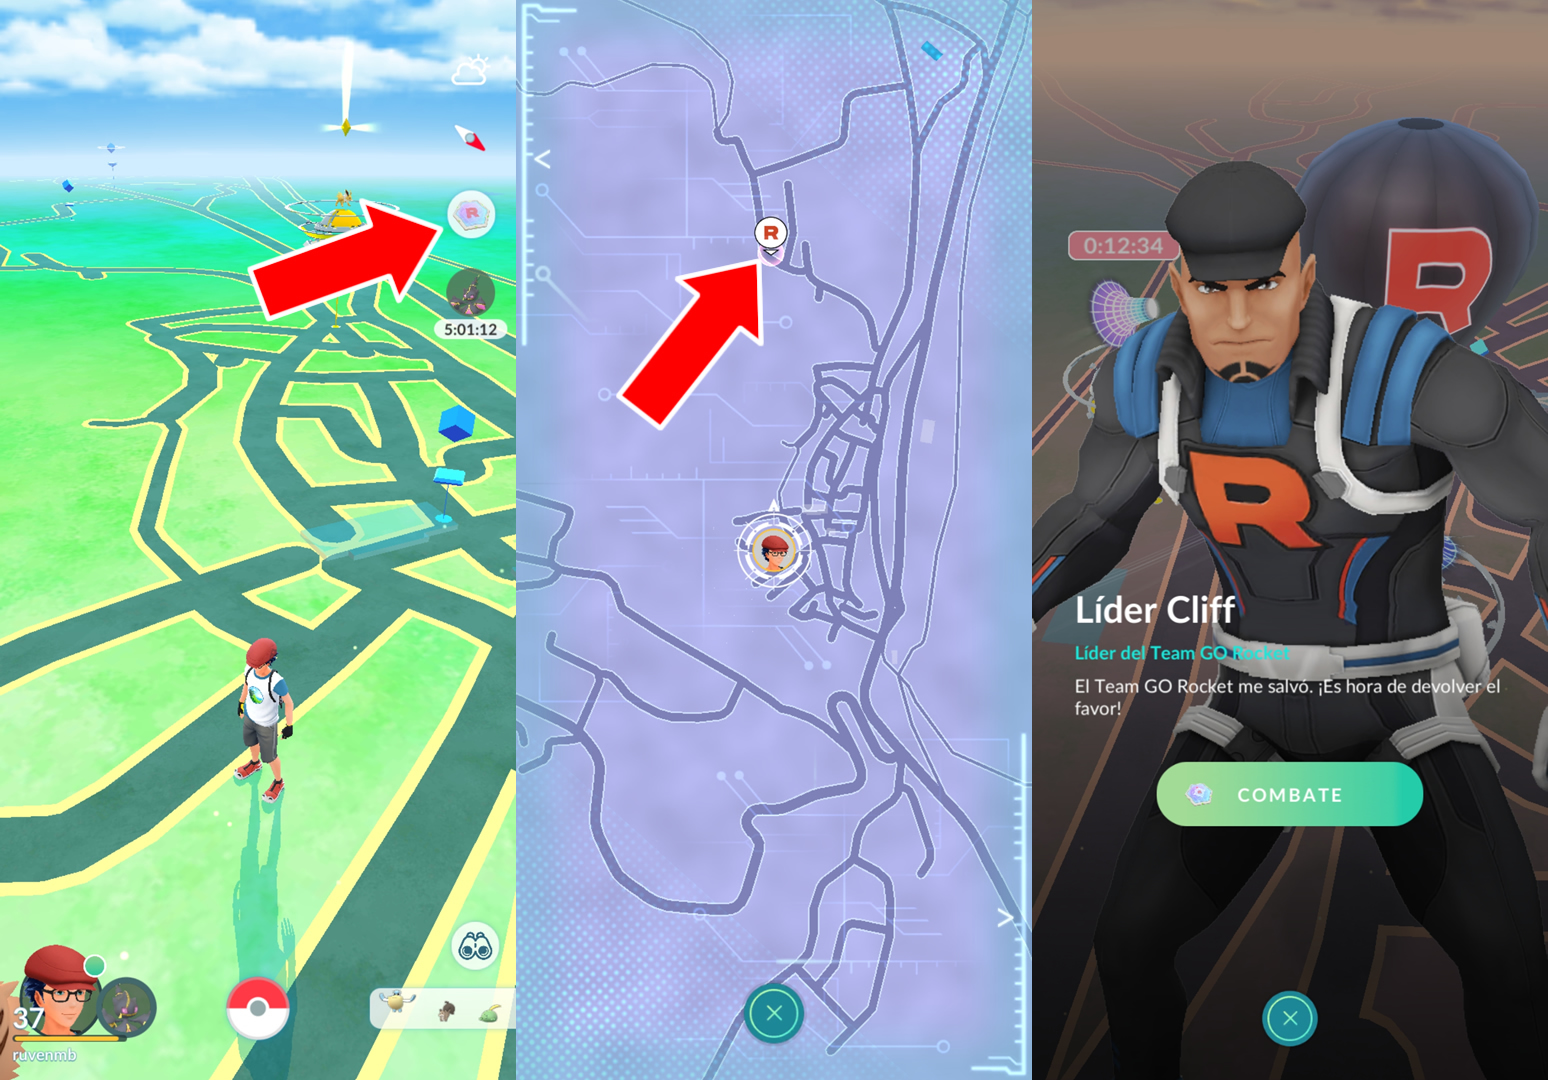 Pokémon GO: Cómo vencer a Cliff, Sierra y Arlo (mayo 2023